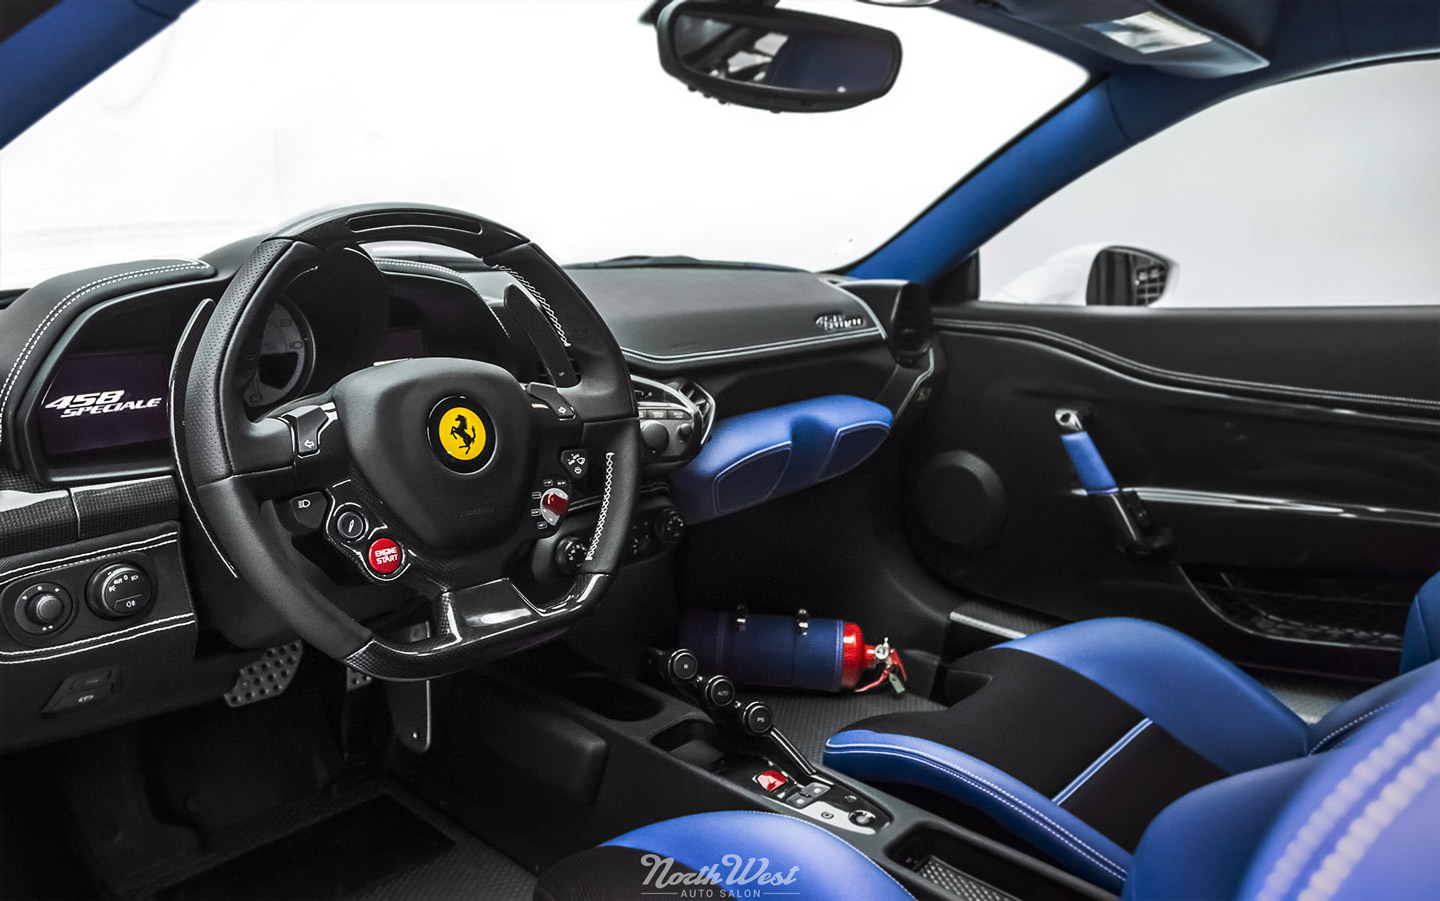 Blue interior on a Ferrari 458 Speciale